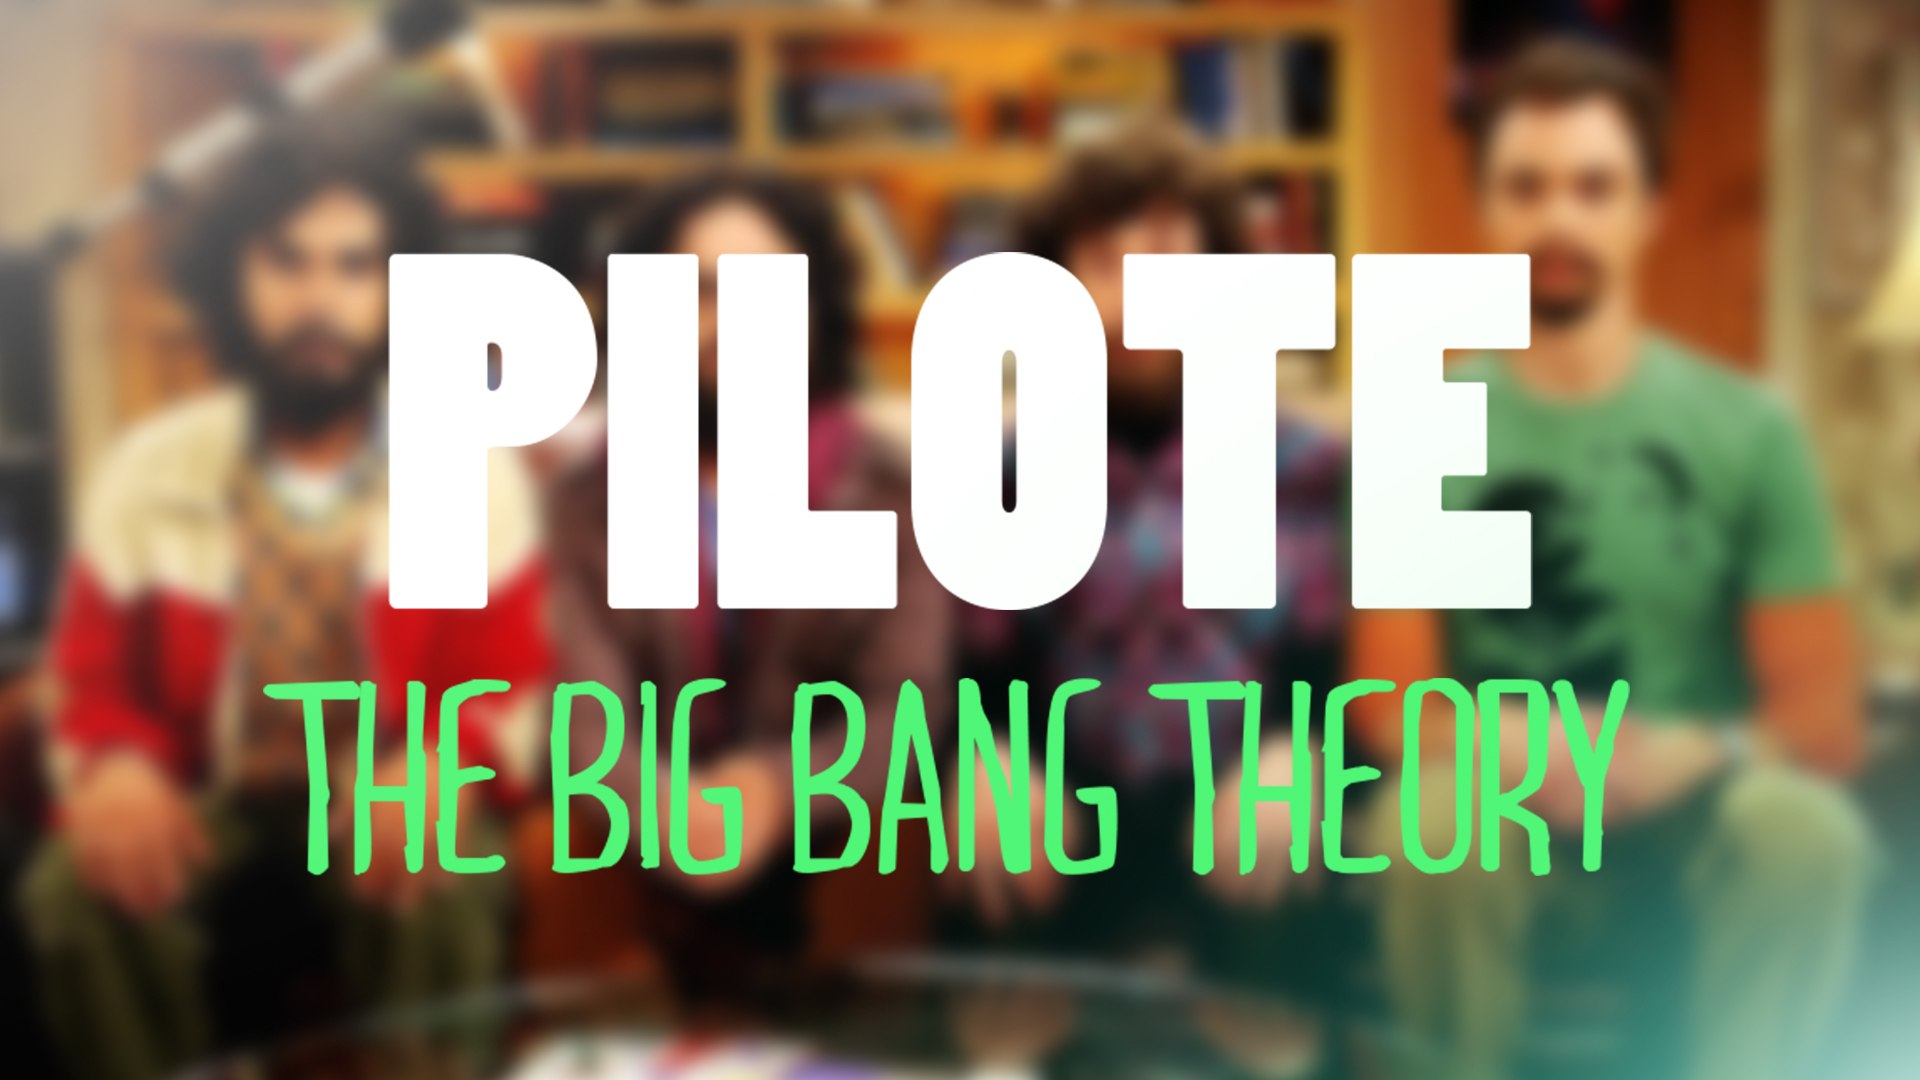 THE BIG BANG THEORY - PILOTE #02